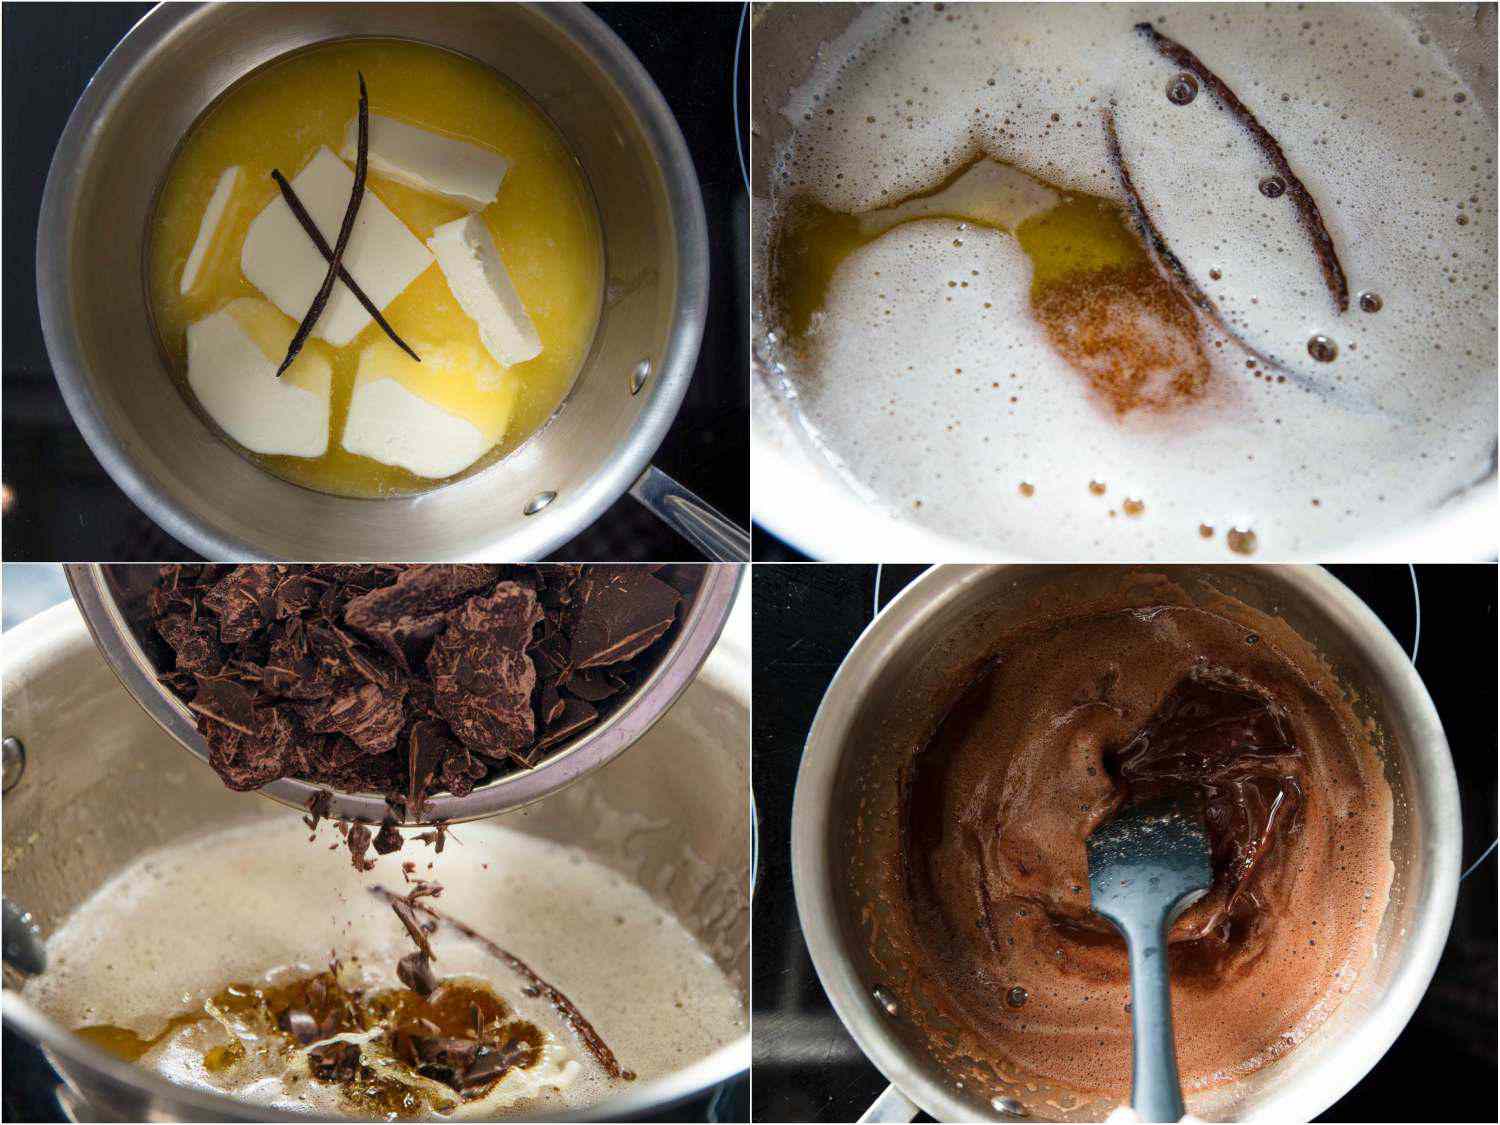 这是一幅四张图片的拼贴画，展示了平底锅里的黄油和香草豆。第二幅图显示了融化的黄油和香草豆。第三张照片是将切碎的巧克力加入融化的黄油中。第四幅图显示巧克力被搅拌到融化的黄油中。gydF4y2Ba